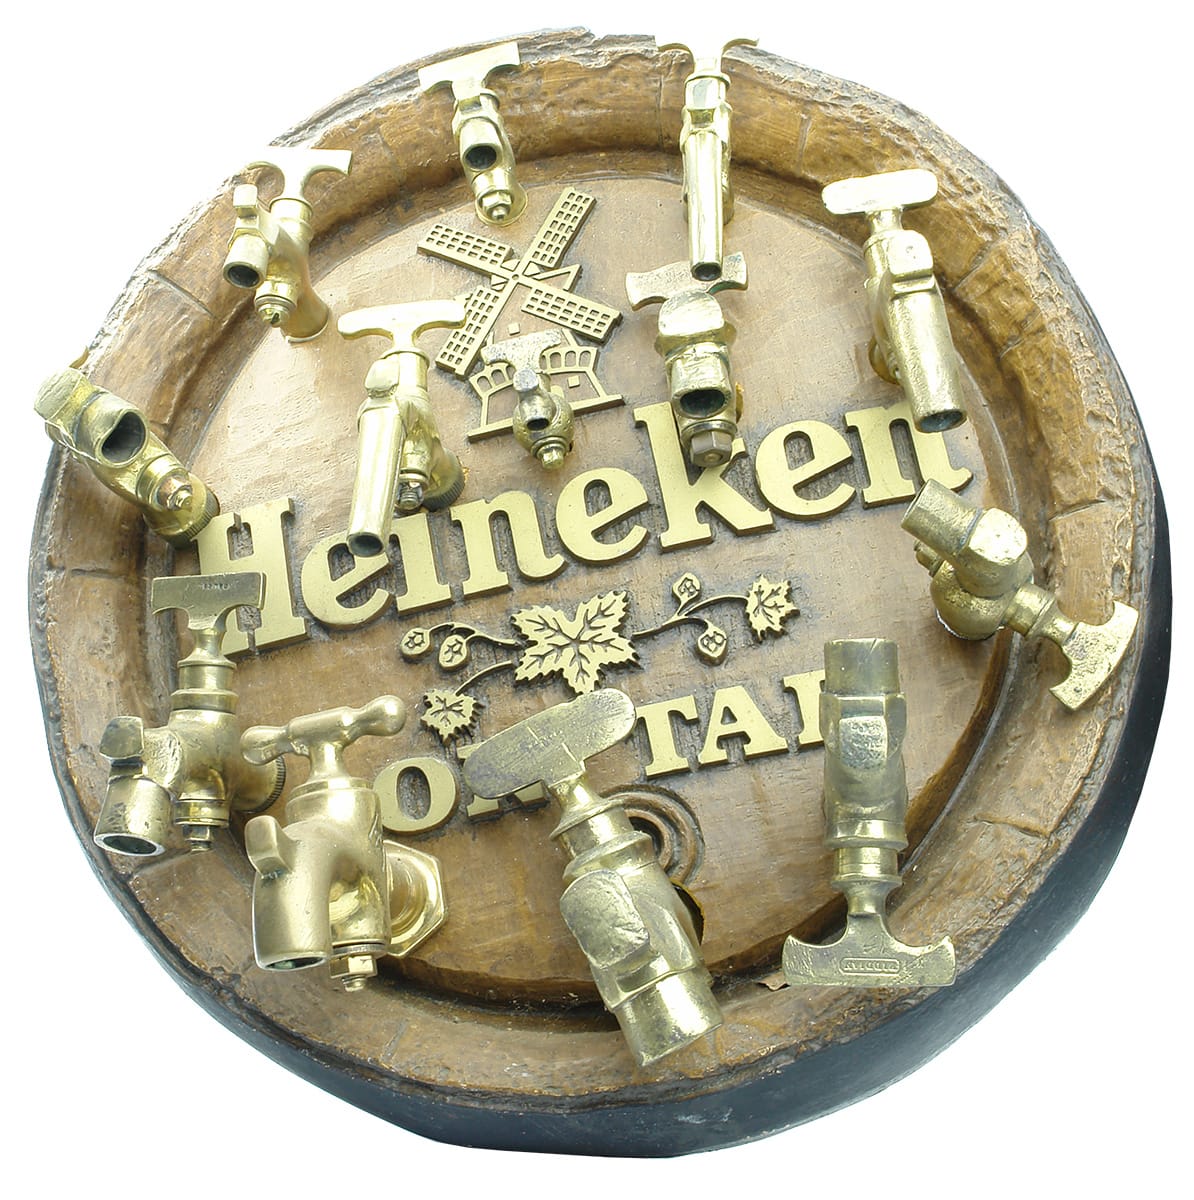 Antique Brass Beer Taps Heineken Display